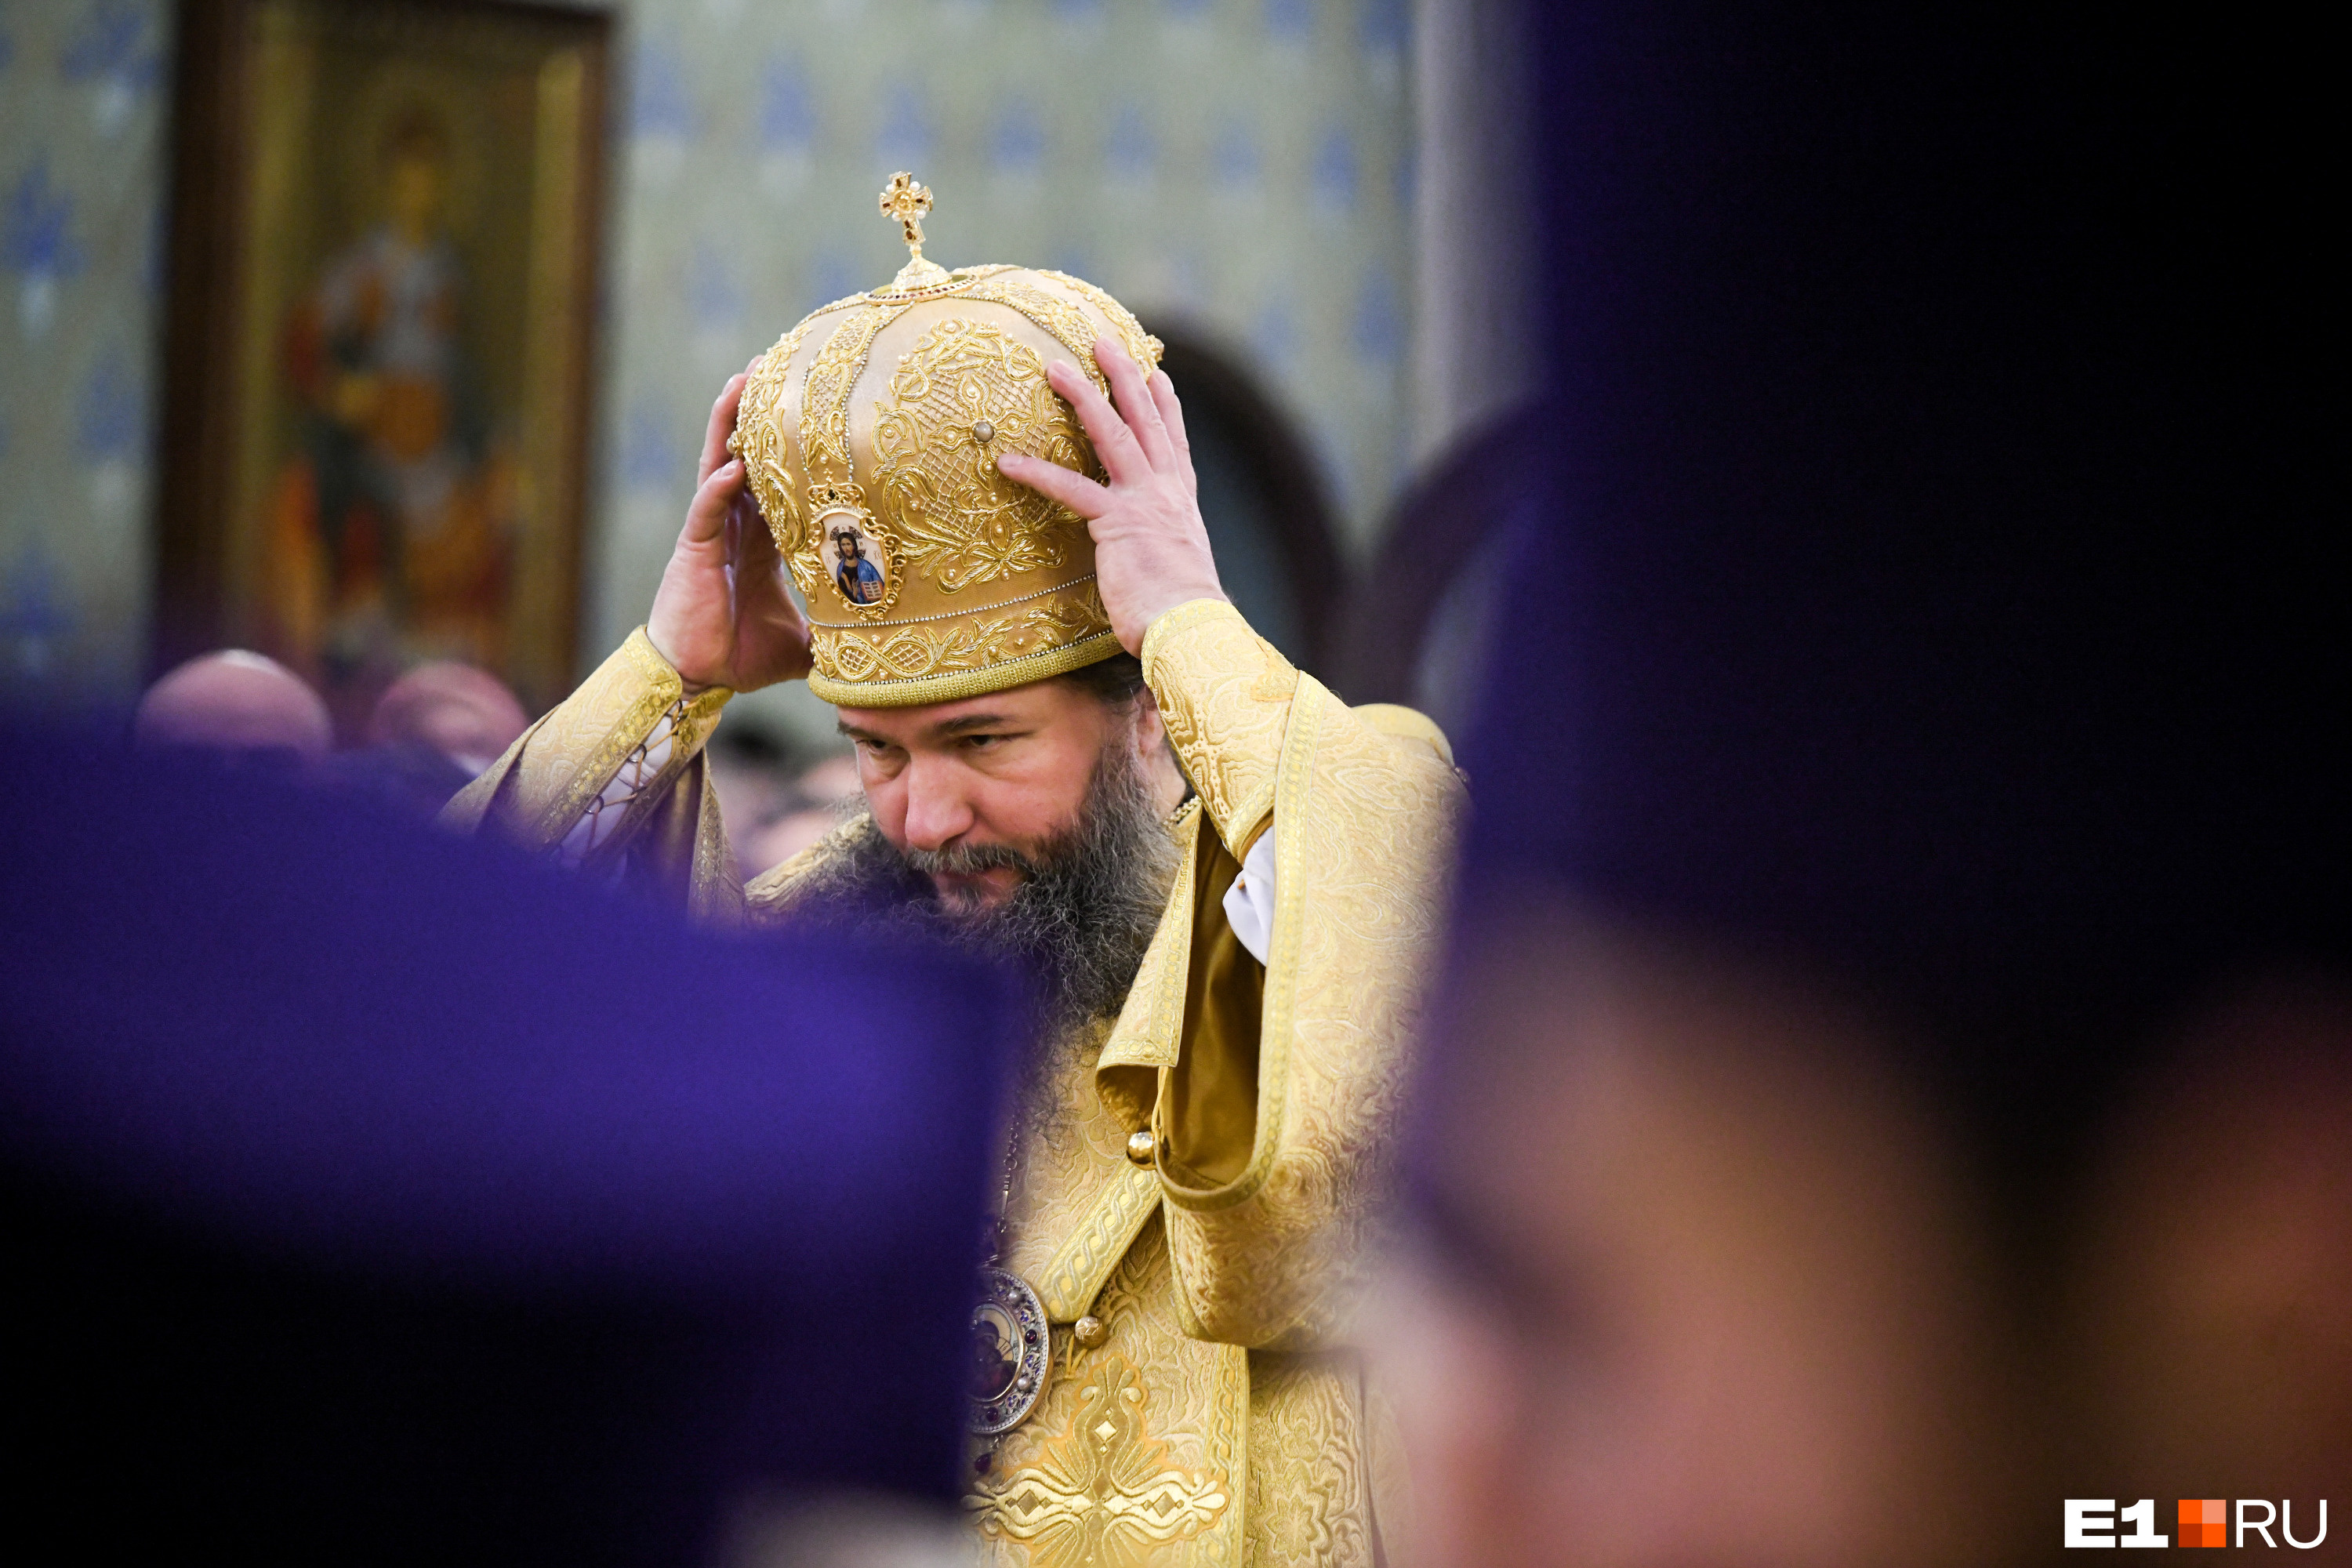 Епископ Евгений возглавил Екатеринбургскую митрополию в 48-летнем возрасте. Он стал 44-м главой Екатеринбургской кафедры